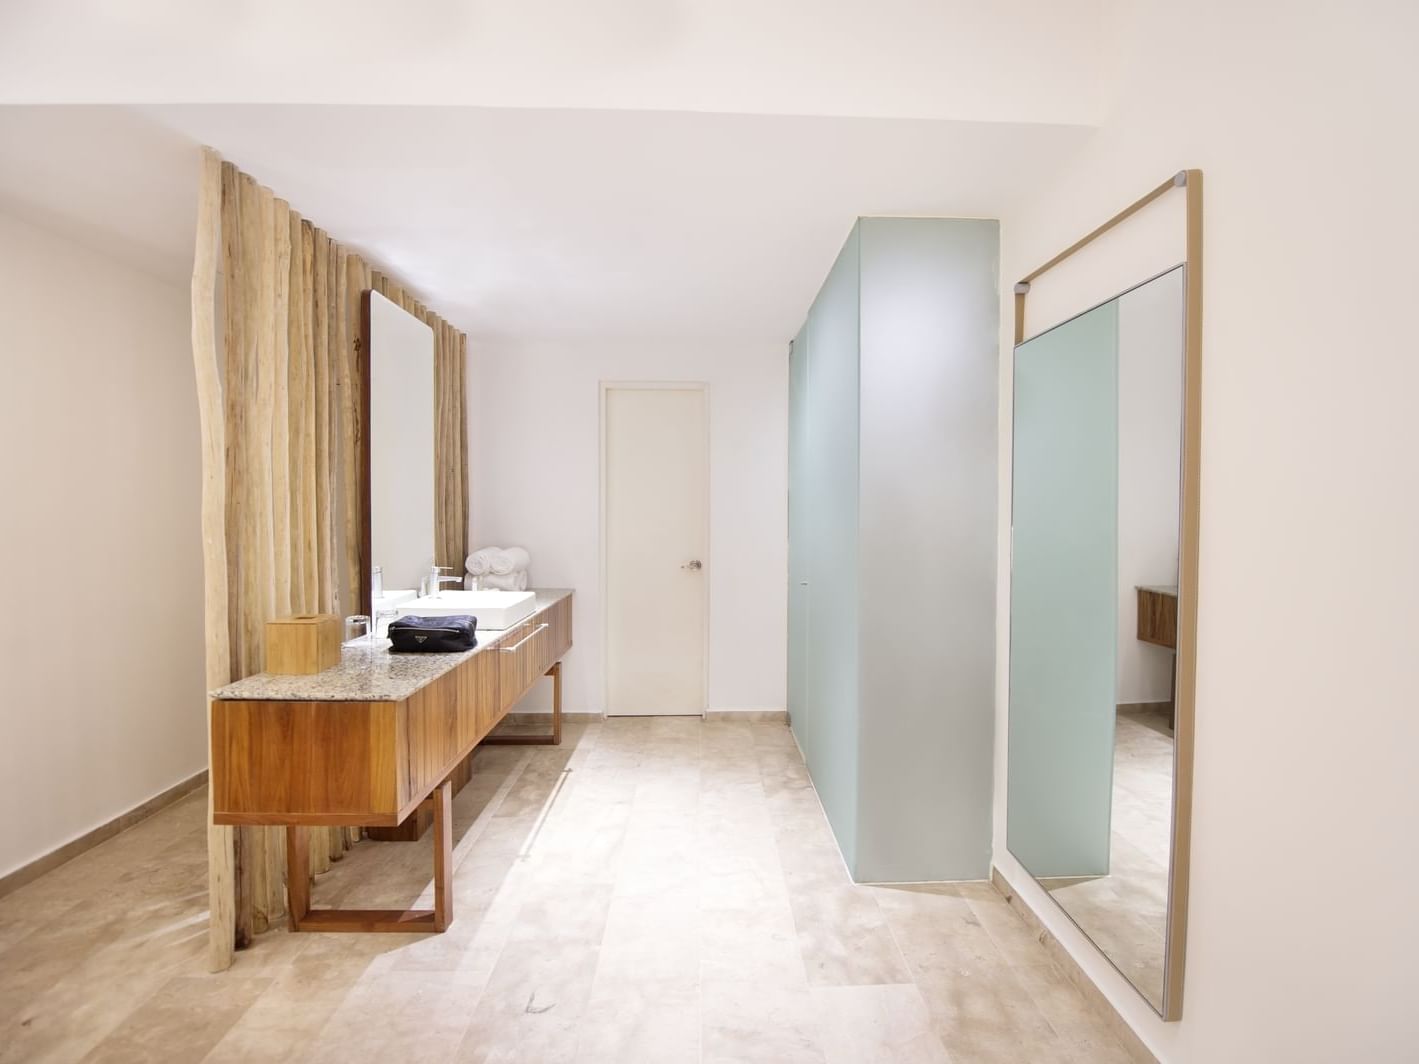 Bathroom vanity & cubical in Casita at The Explorean Cozumel